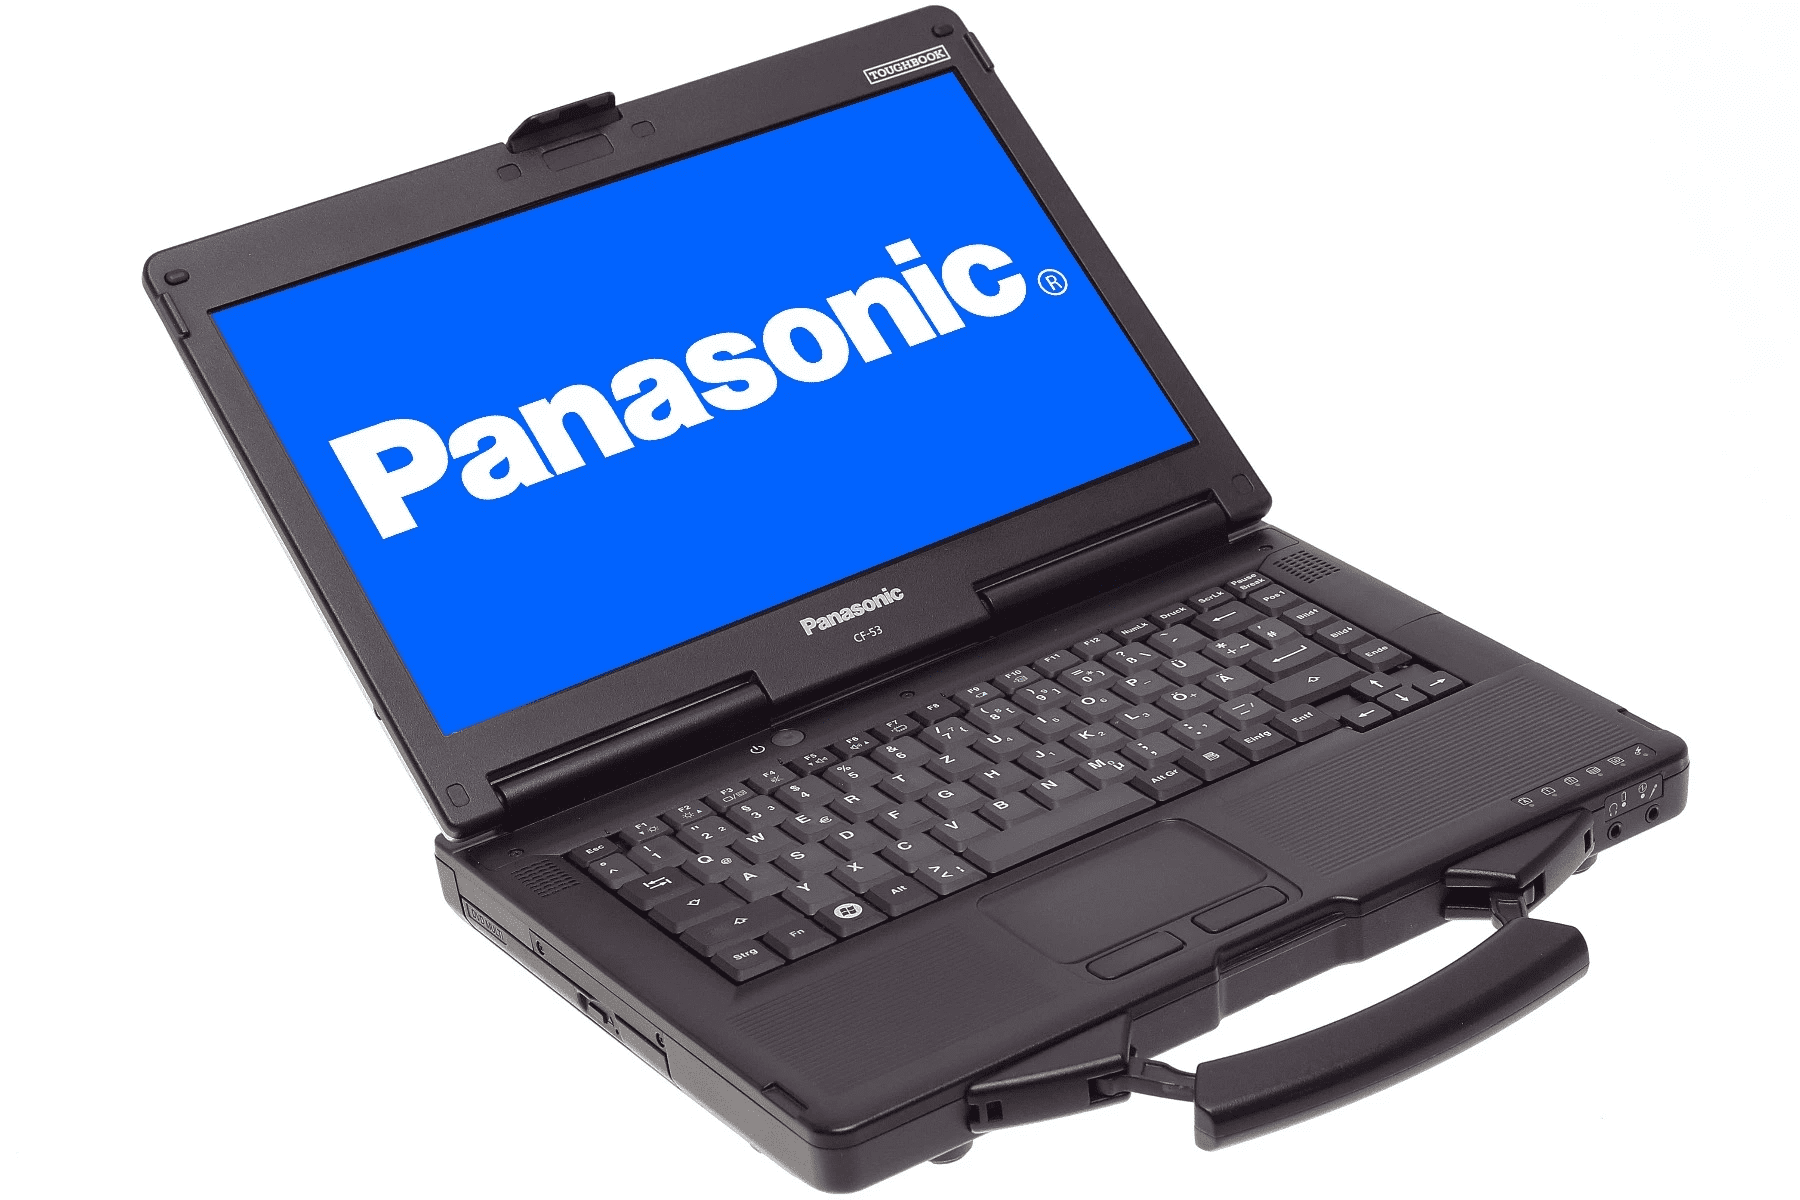 Купить Ноутбук Panasonic Toughbook